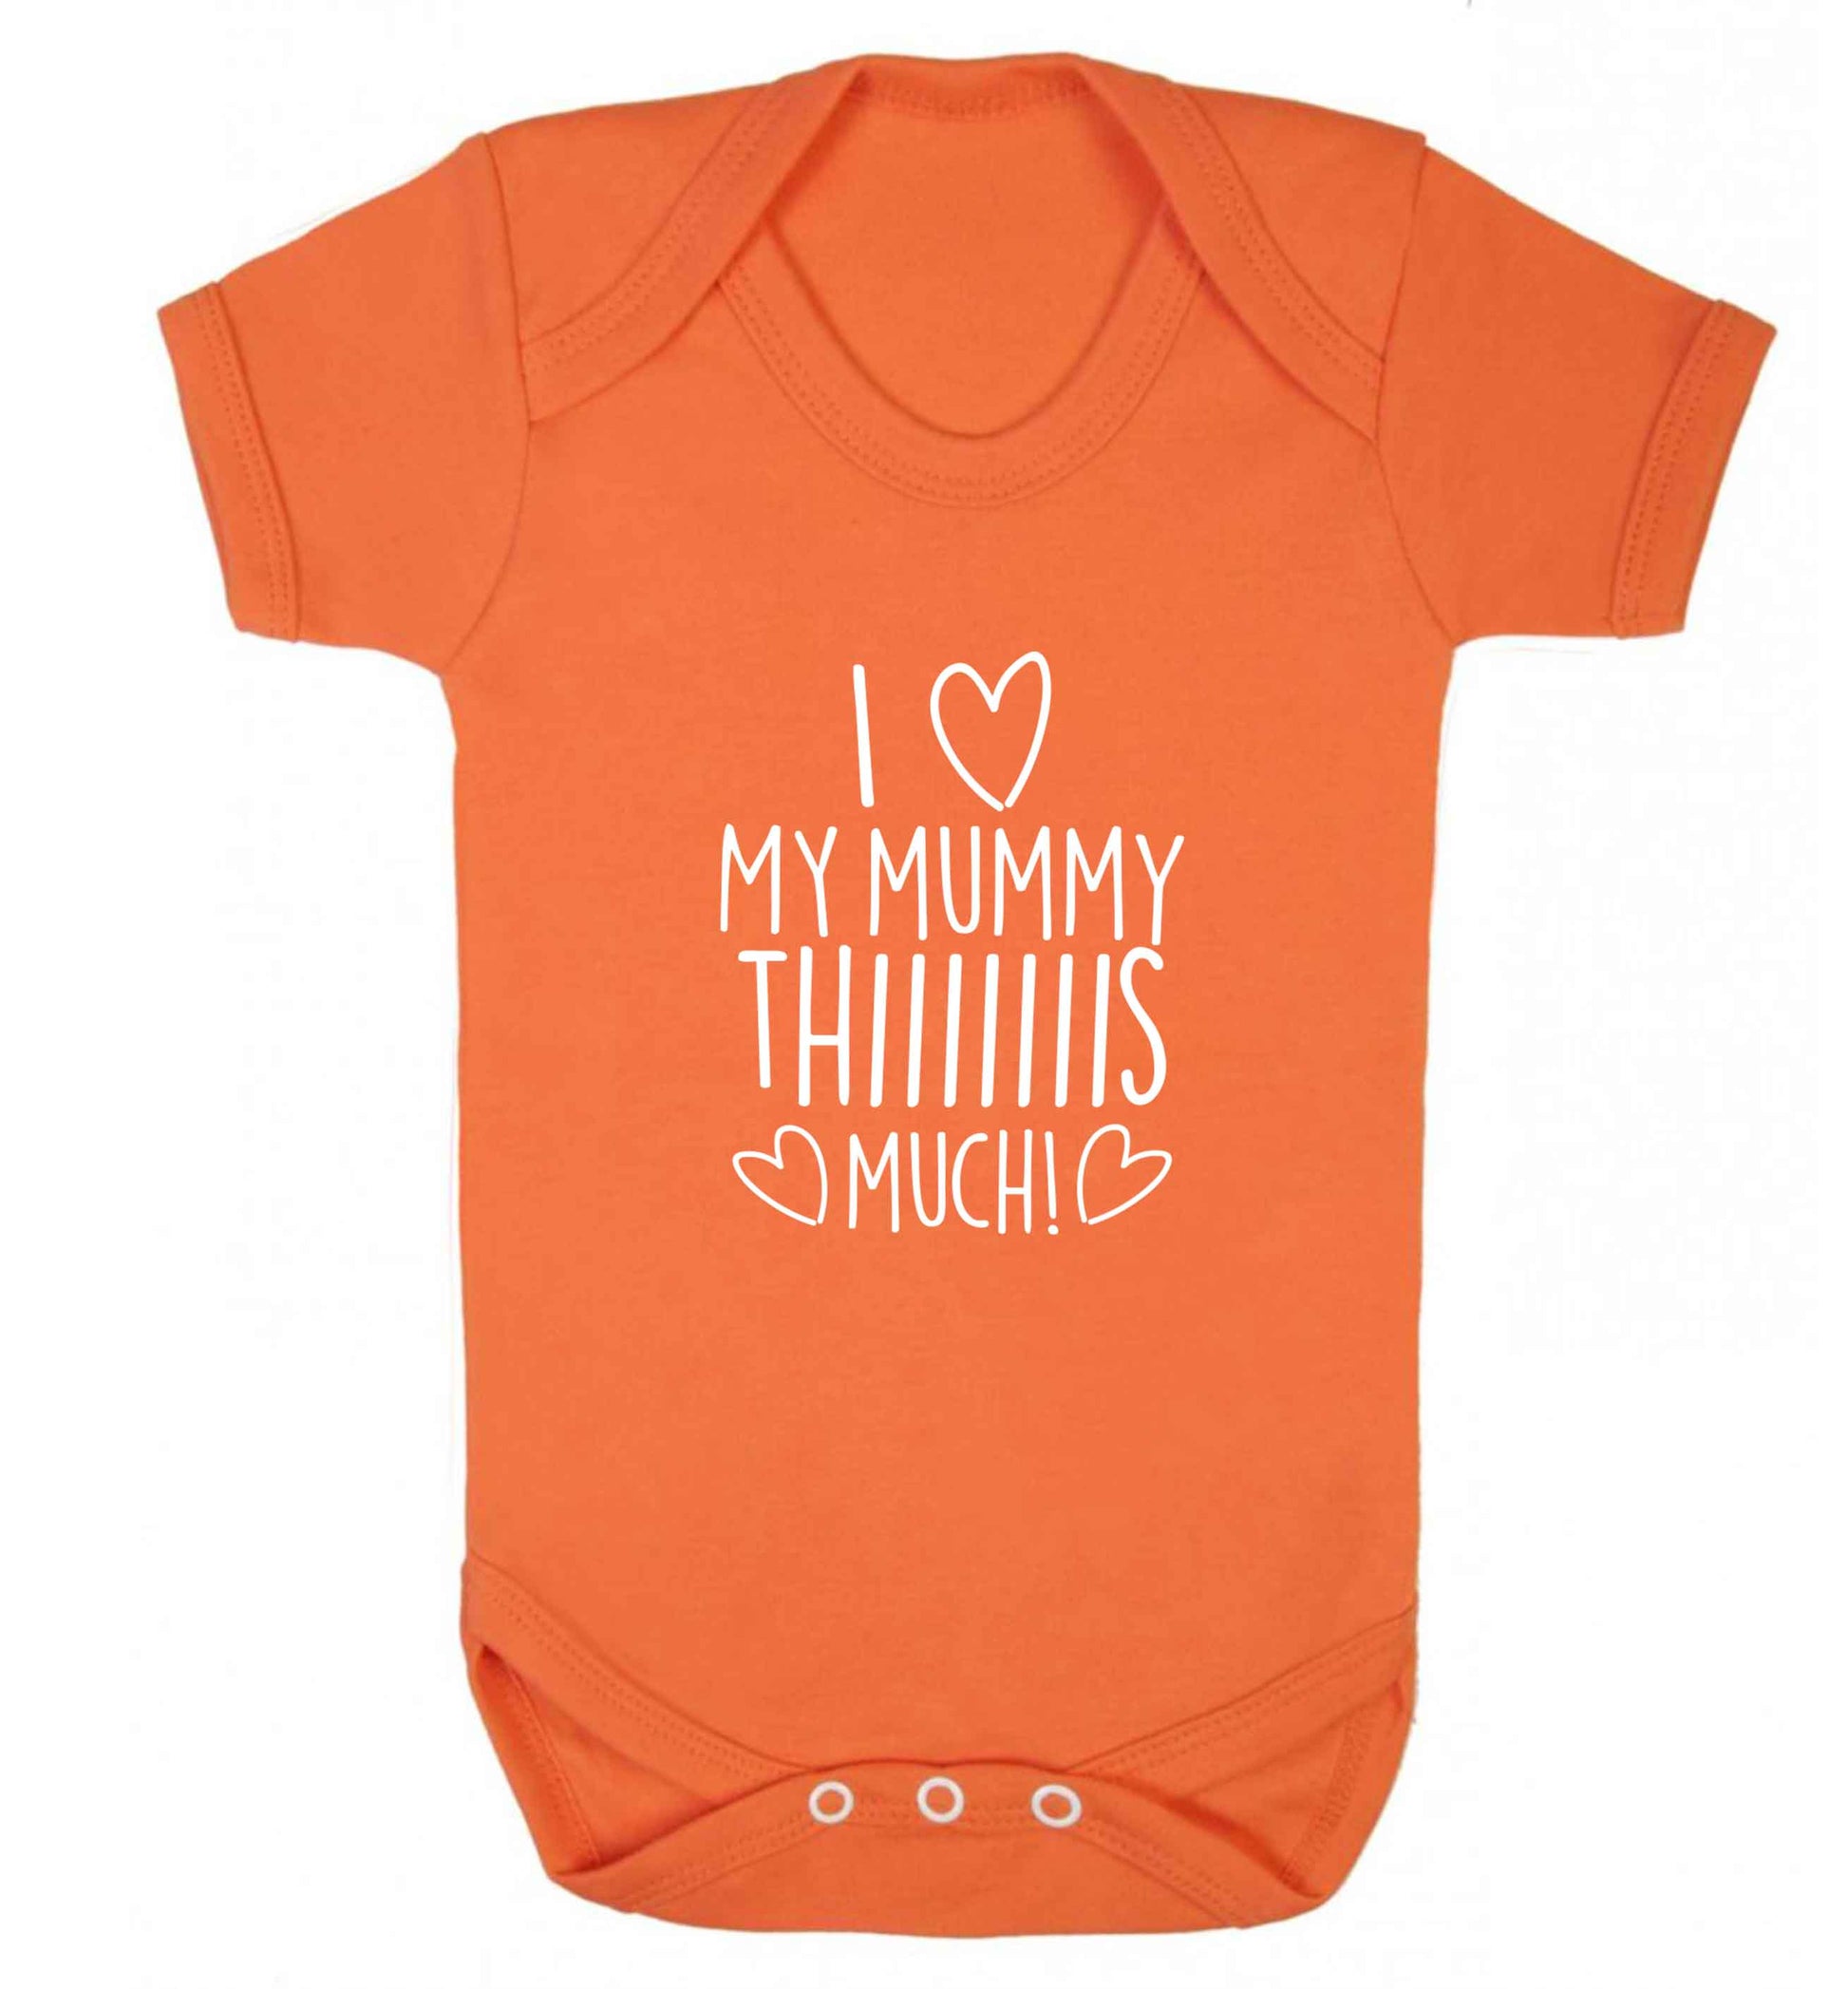 I love my mummy thiiiiis much! baby vest orange 18-24 months